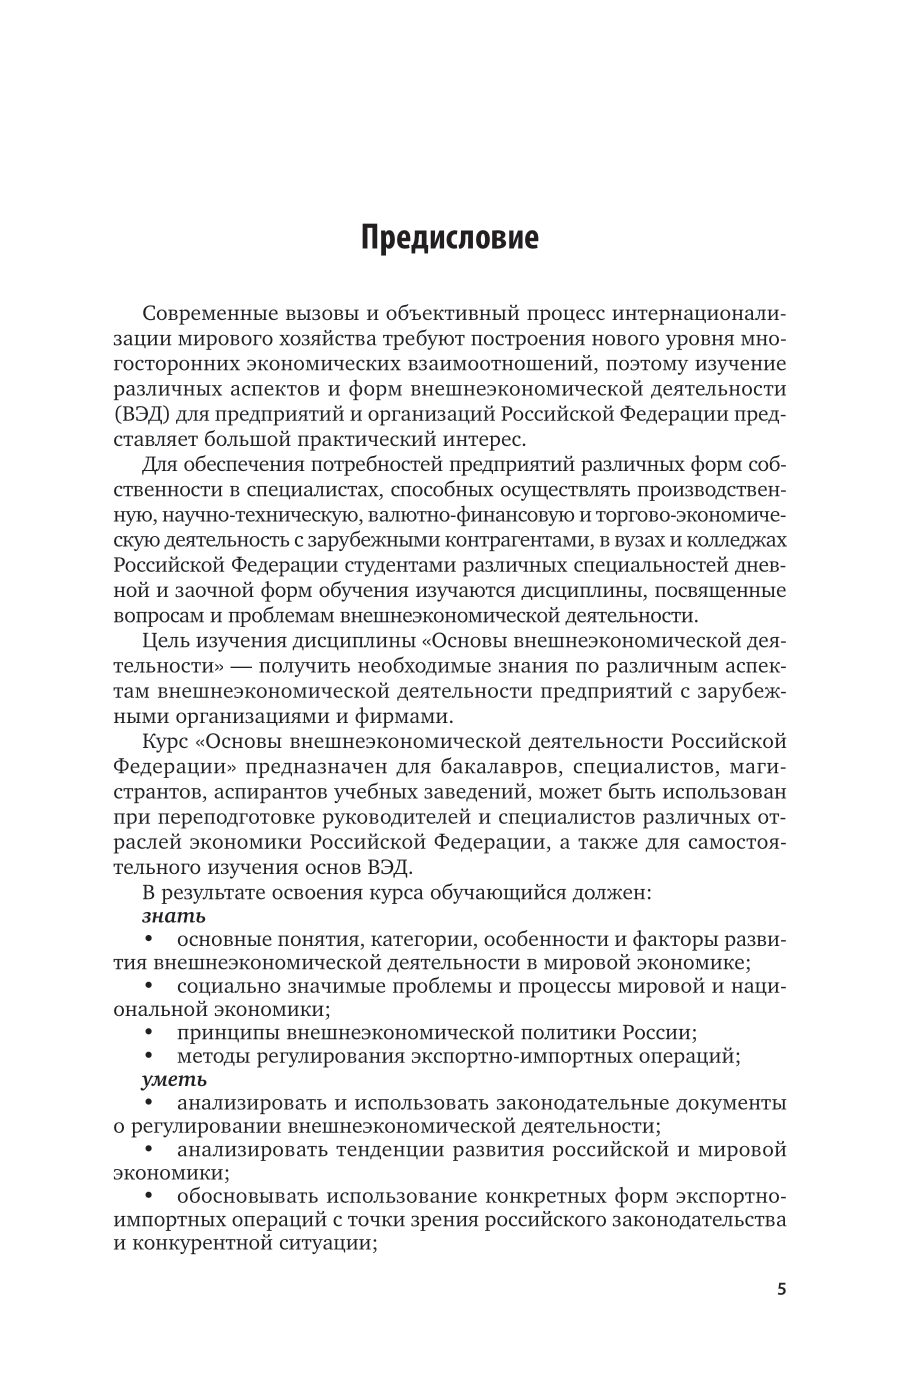 Основы внешнеэкономической деятельности Российской Федерации